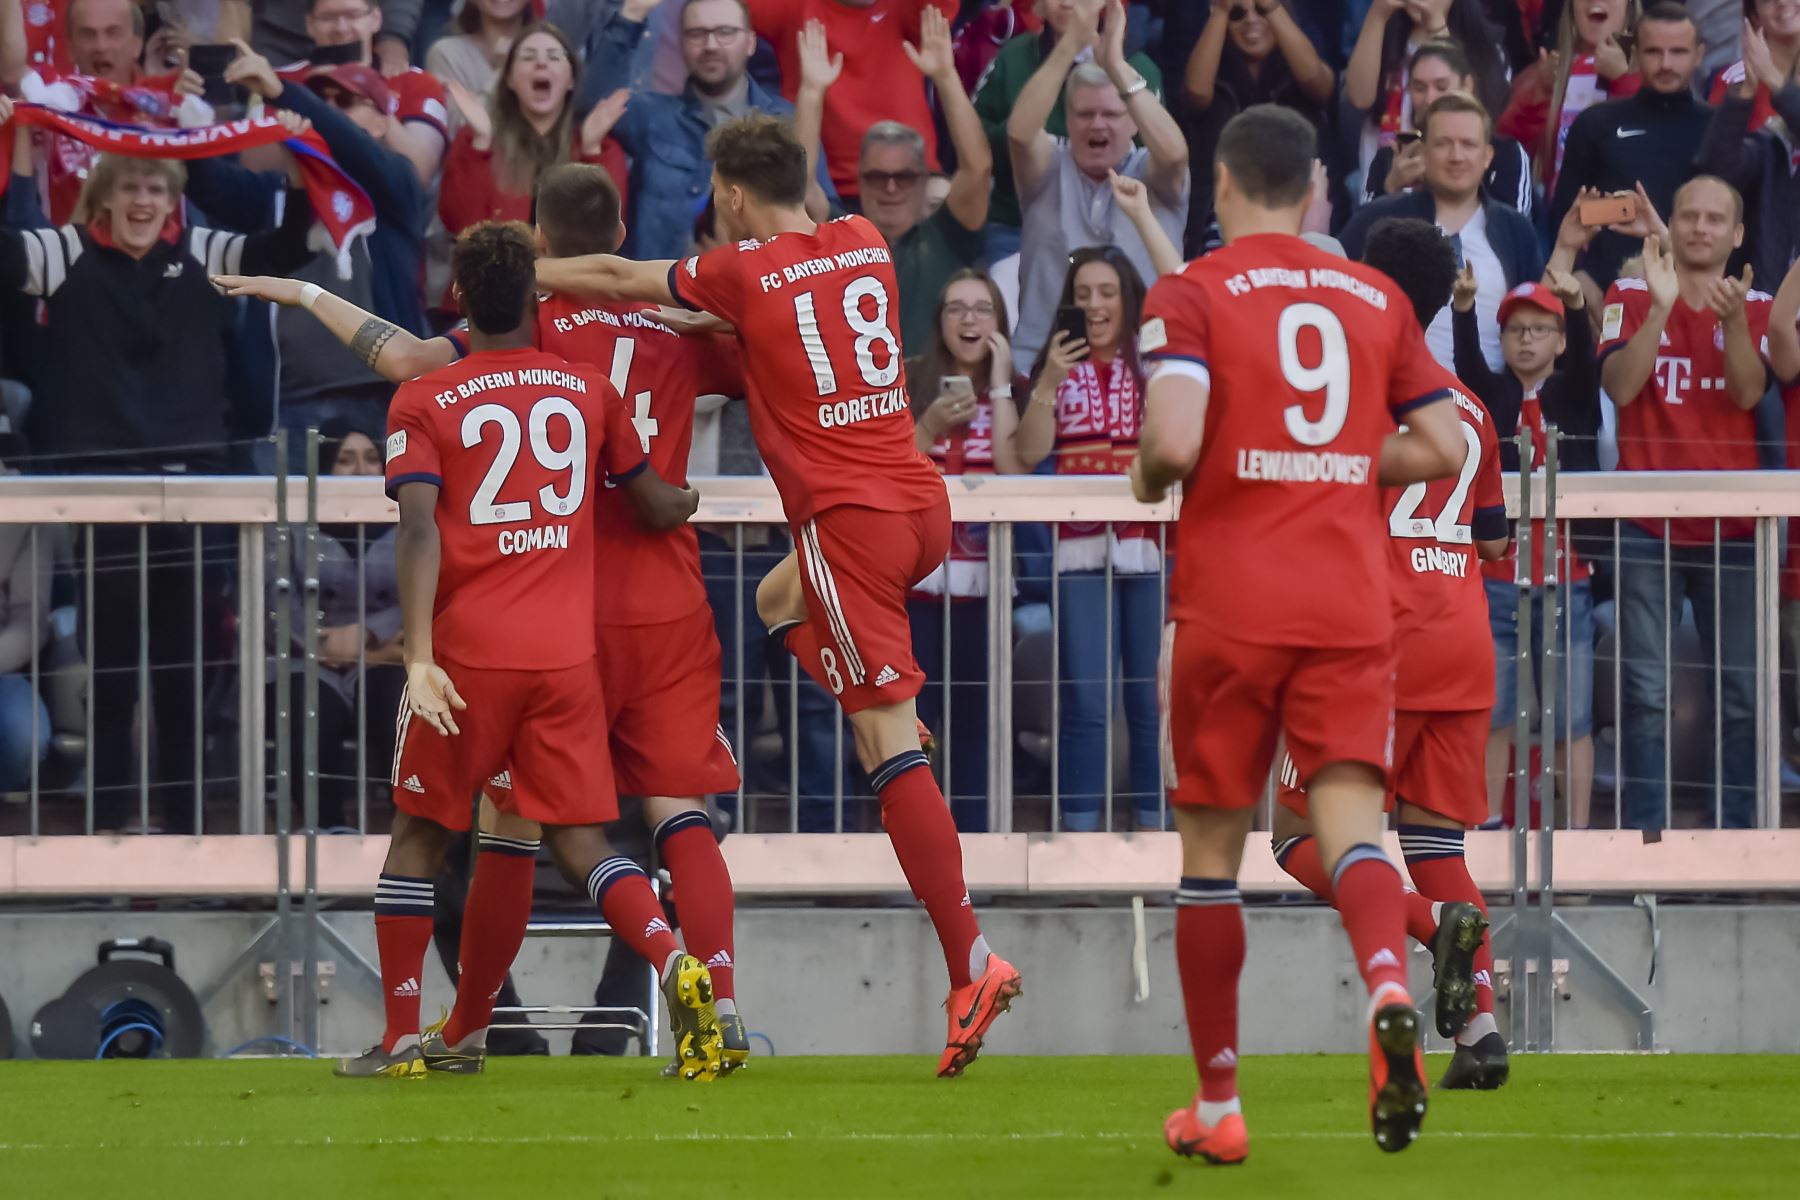 El equipo del Bayern Munich celebra el 1-0 durante el partido de fútbol de la primera división alemana de la Bundesliga FC Bayern Munich vs SV Werder Bremen el 21 de abril de 2019 en Munich.
Guenter SCHIFFMANN / AFP